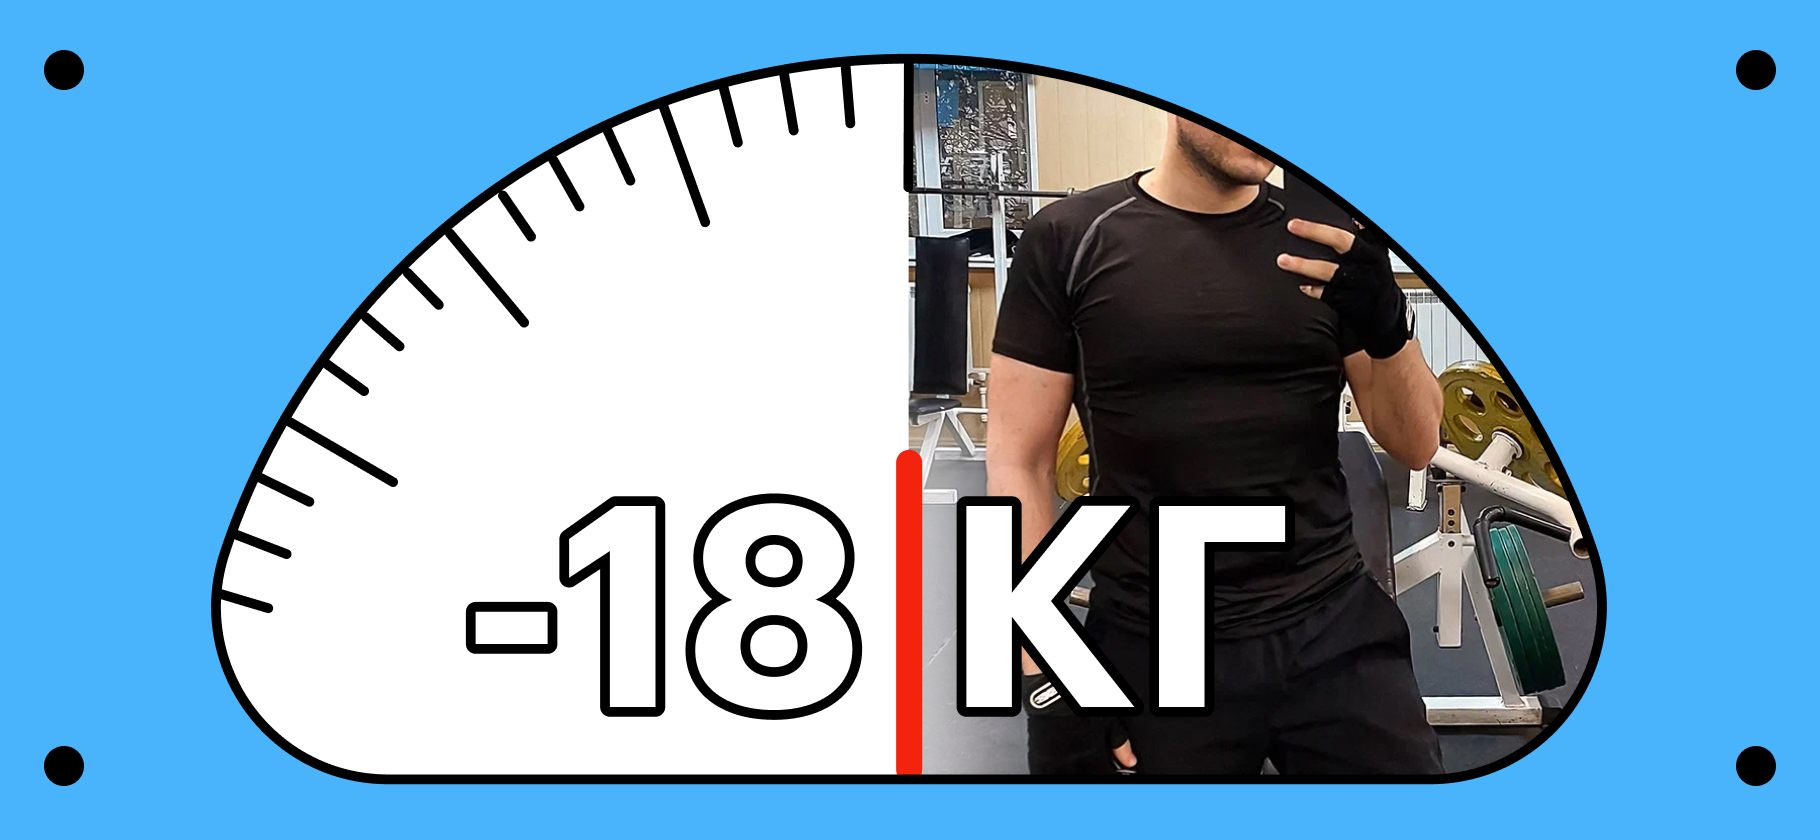 «Большой плюс похудения — психологическое равновесие»: как я похудел на 18 кг за 4 месяца